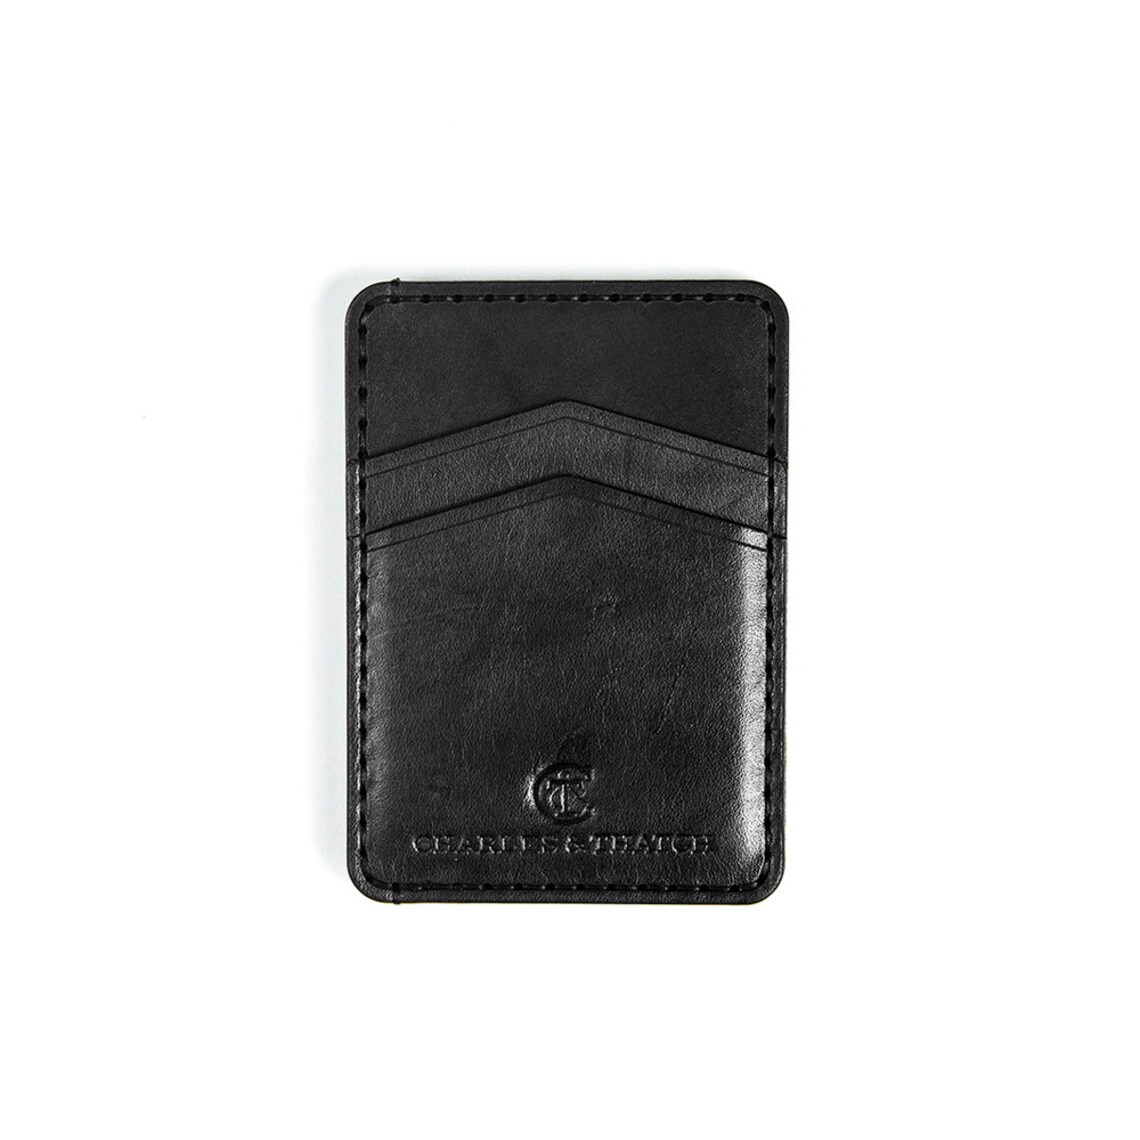 Personalized Men's Minimalist Wallet Slim Wallet Coal | Etsy